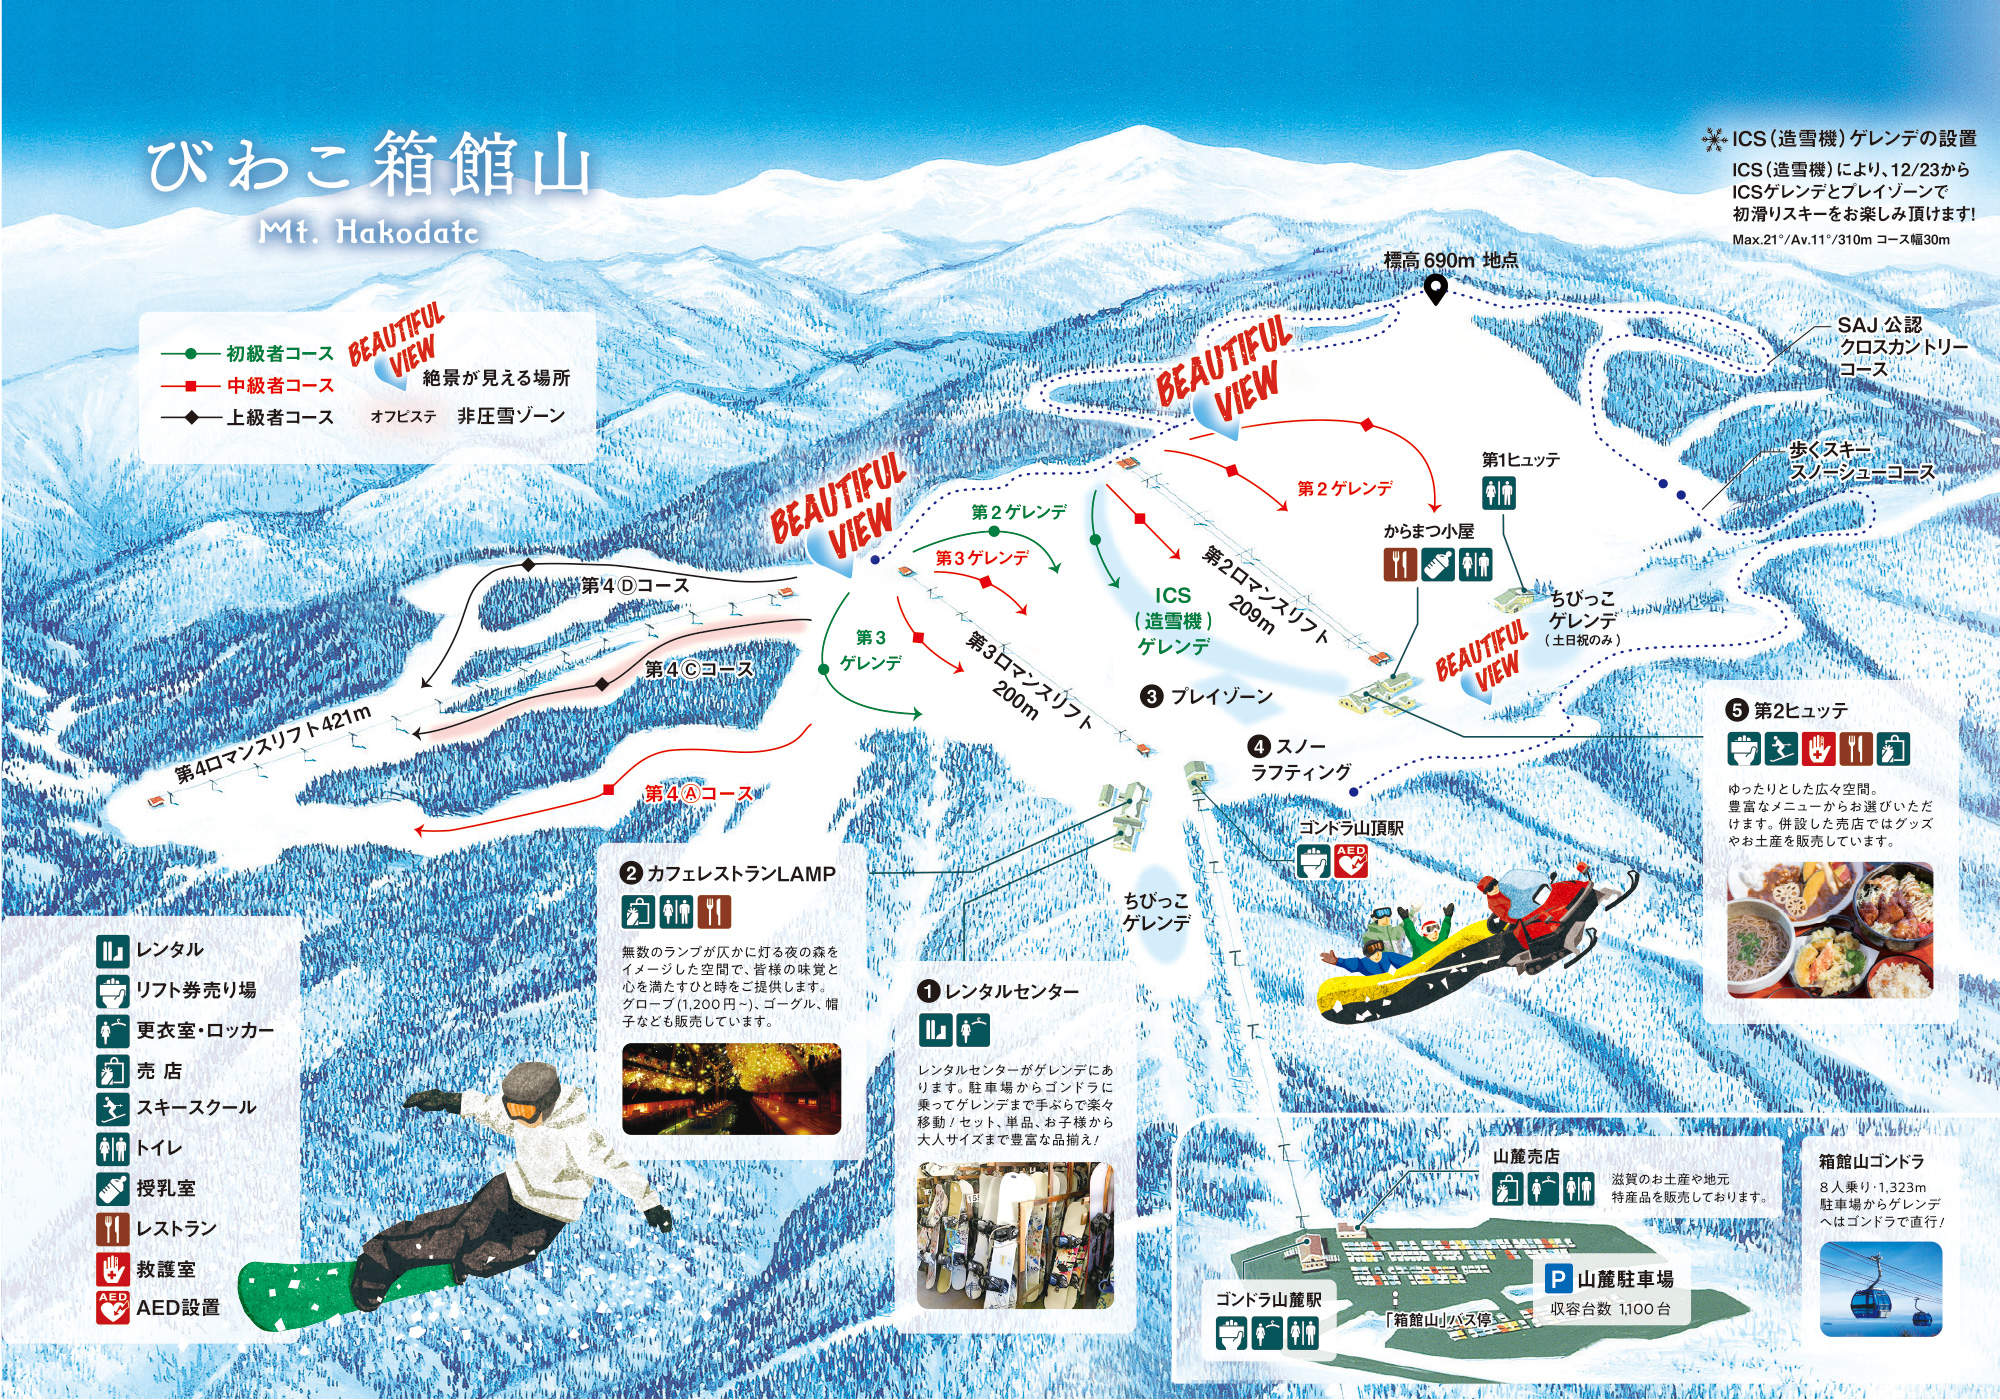 びわ湖箱館山スキー場券 - スキー